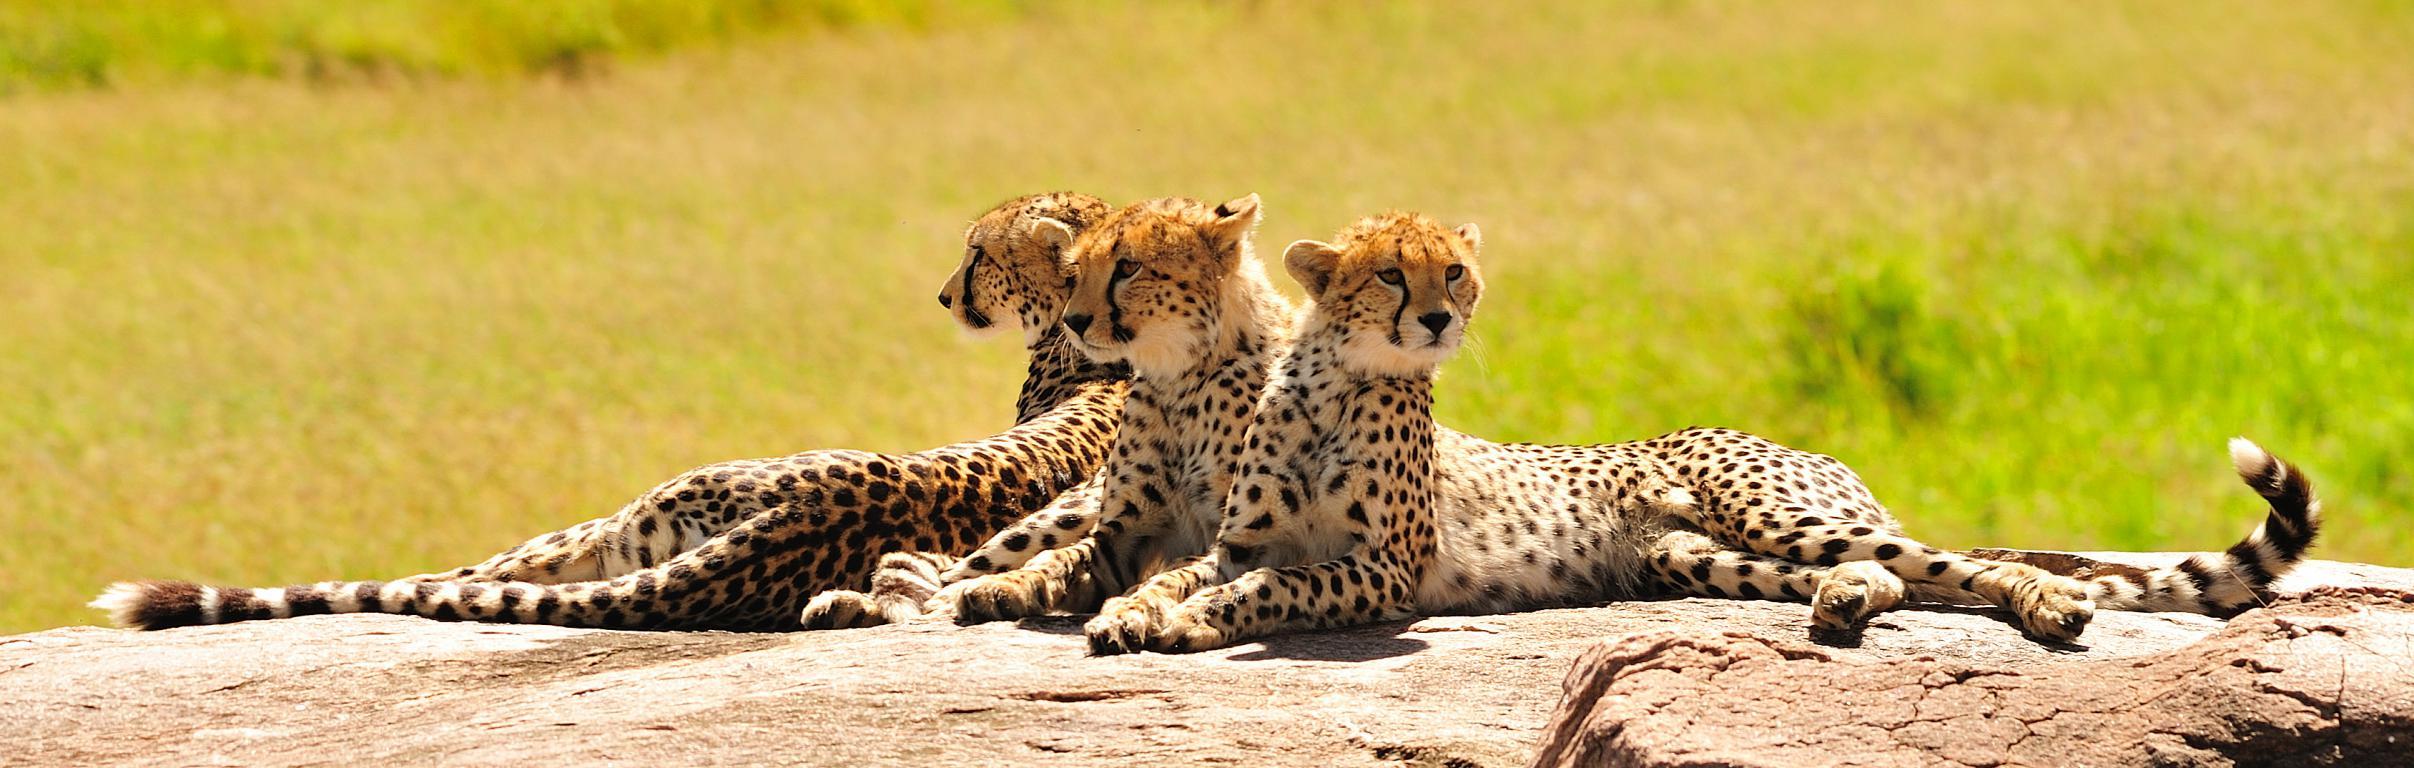 Африканские гепарды - интерьерная фотокартина